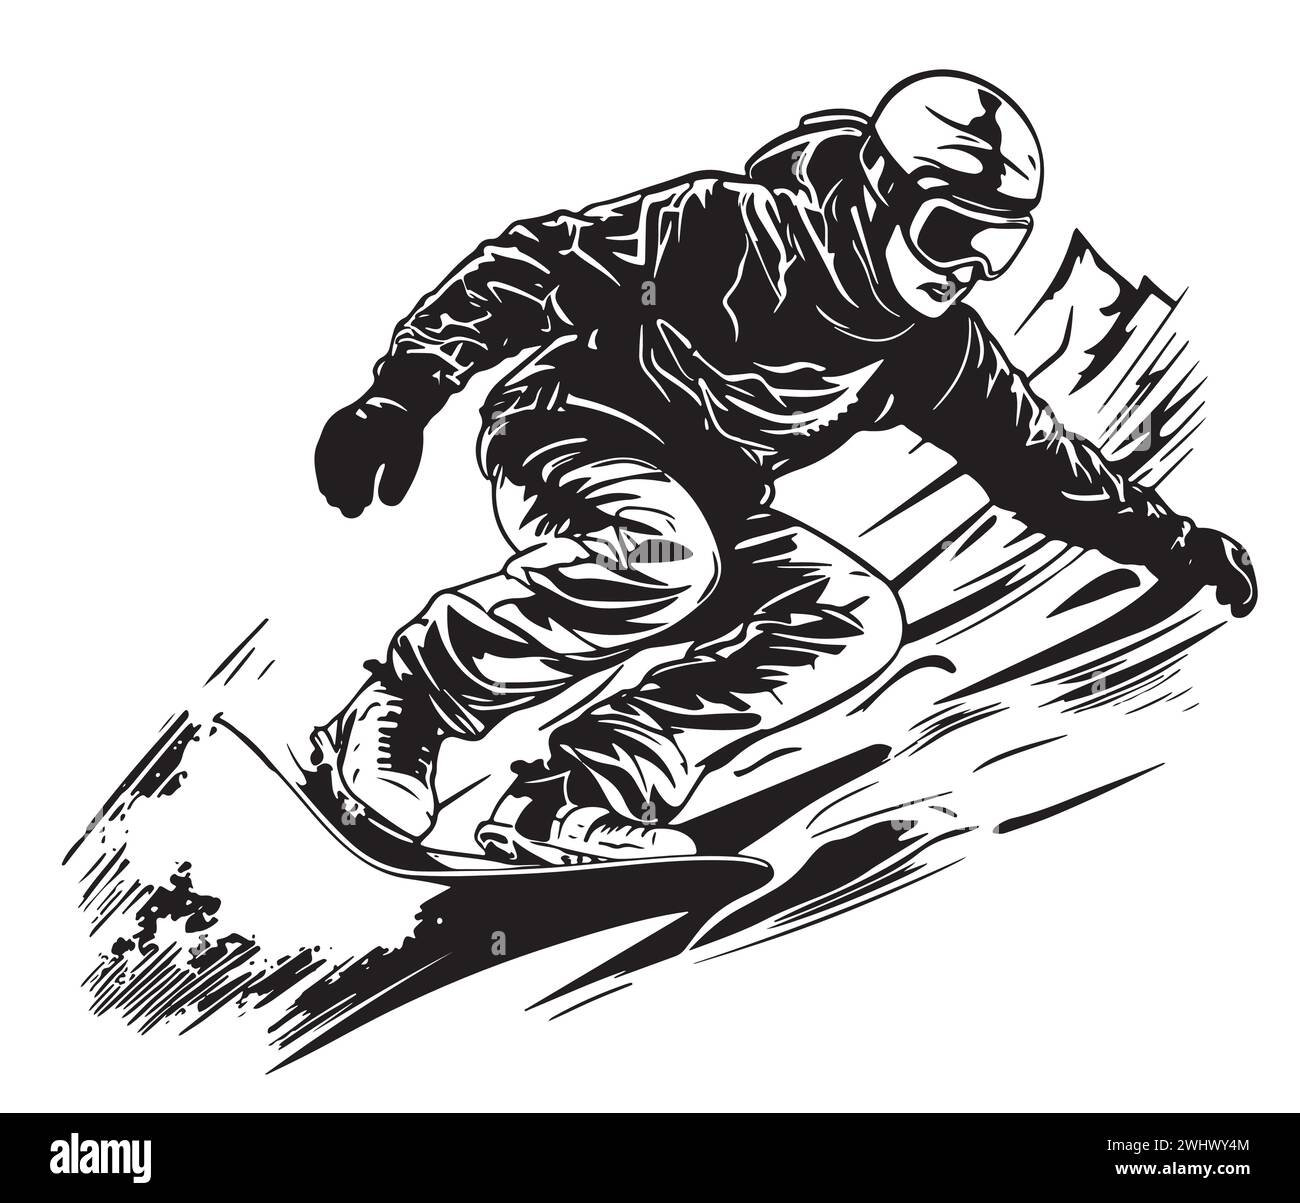 sports d'hiver, collection snowboard. Dessin à la main. Esquisse vectorielle de snowboardeur Illustration de Vecteur